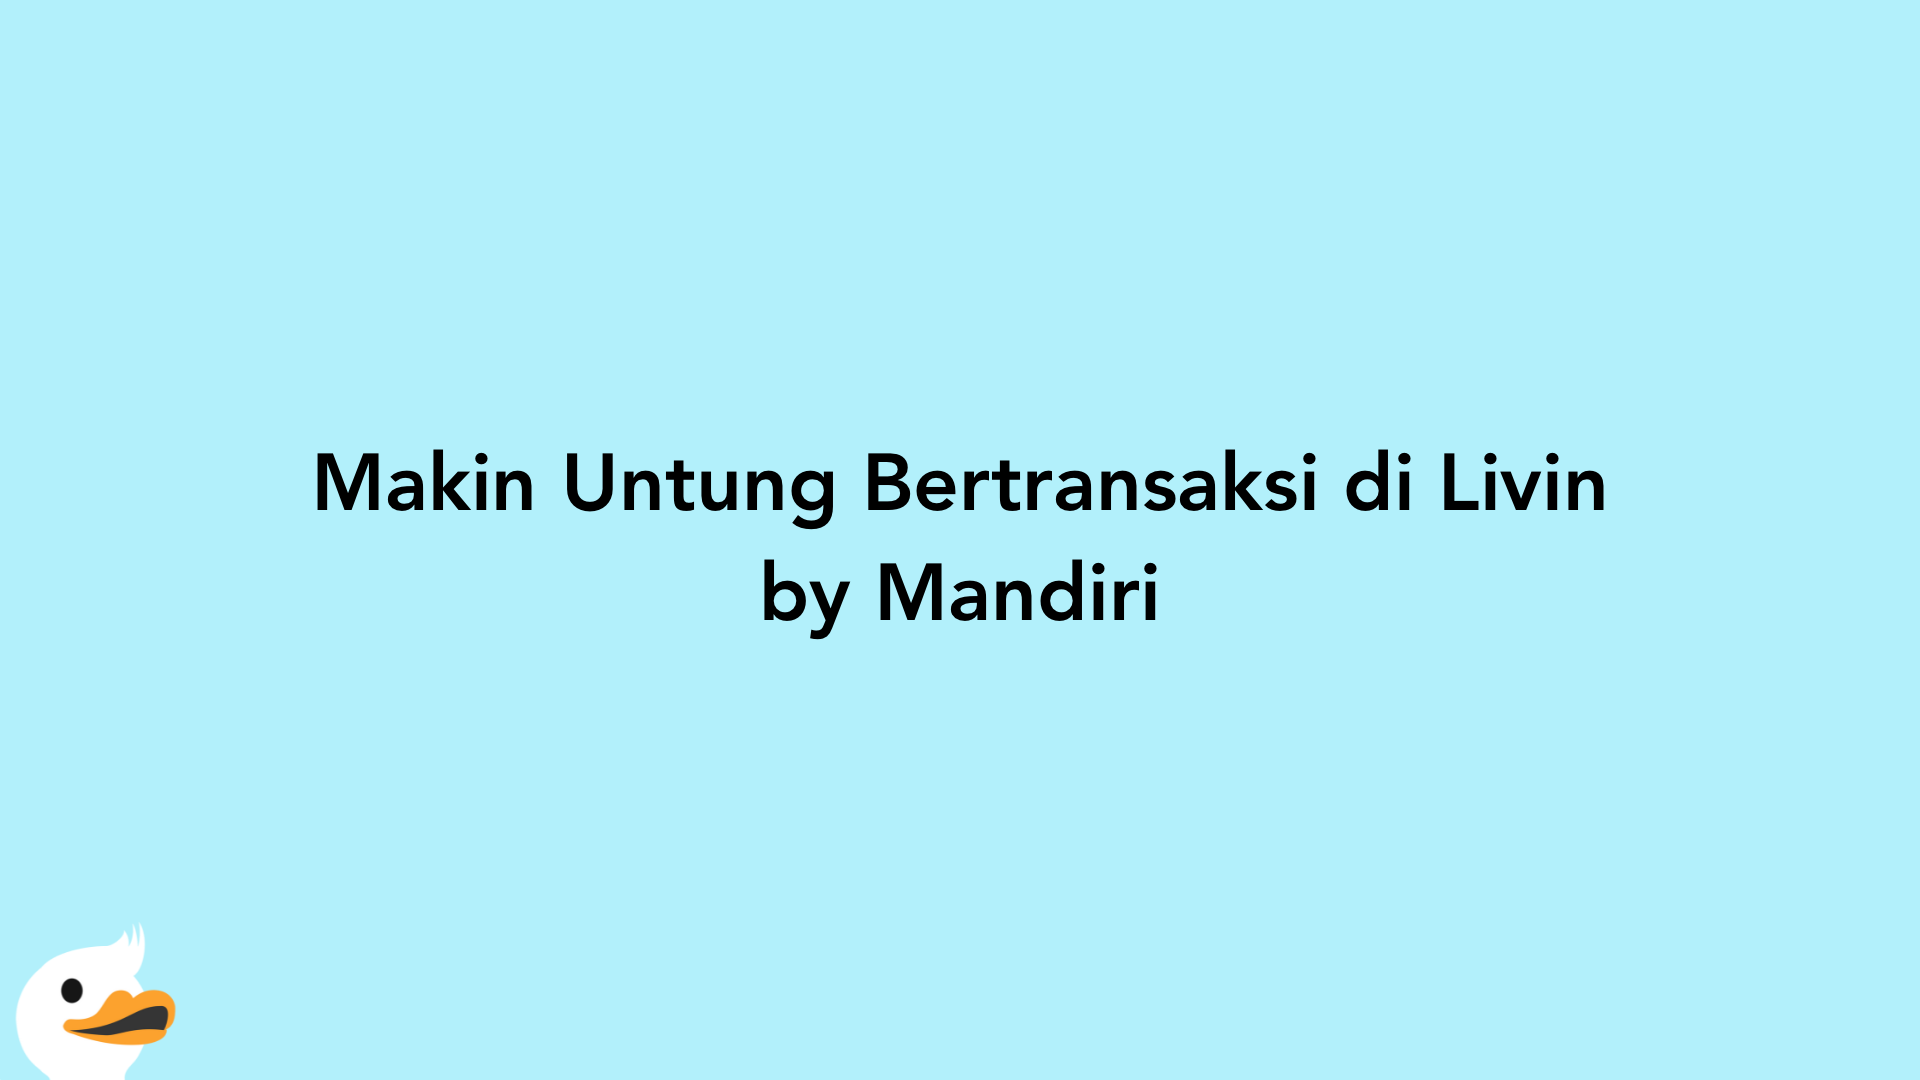 Makin Untung Bertransaksi di Livin by Mandiri